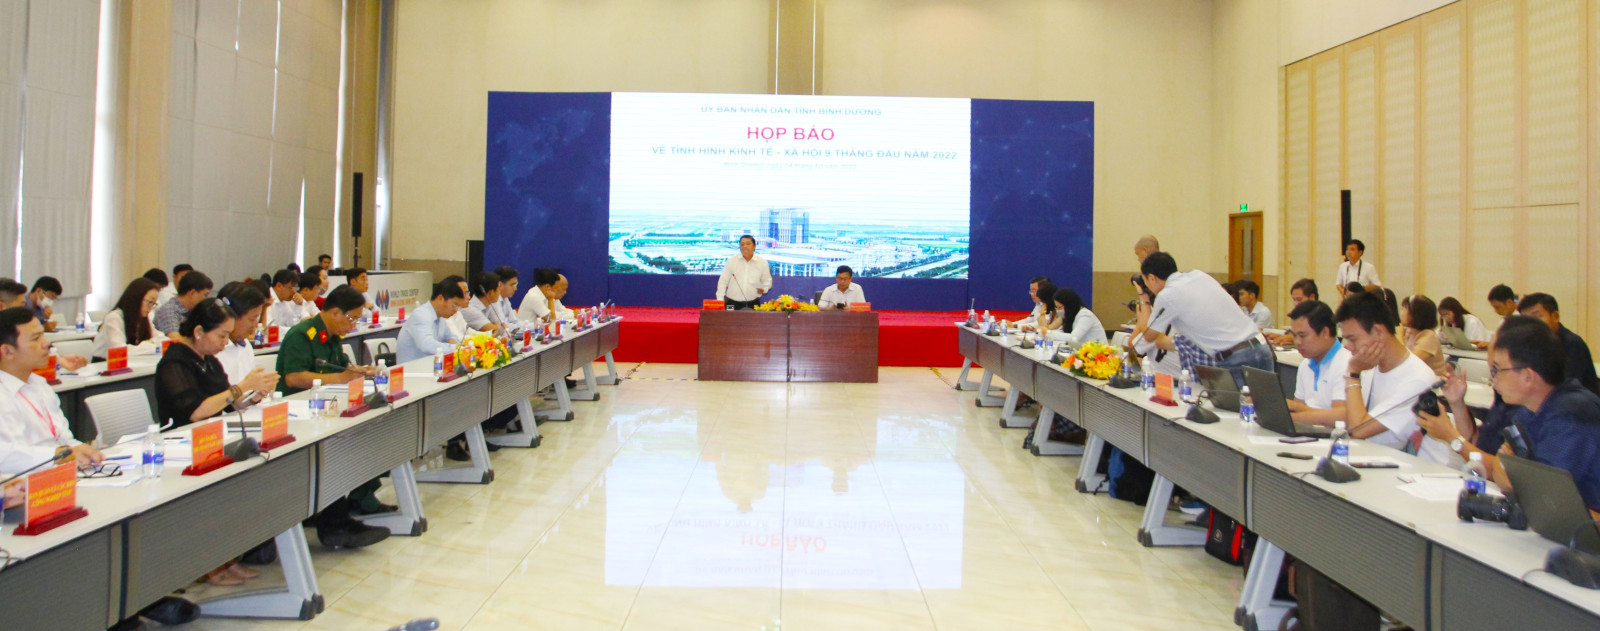 Ông Nguyễn Tầm Dương (đứng) - Chánh Văn phòng UBND tỉnh Bình Dương chủ trì họp báo, cung cấp thông tin báo chí.